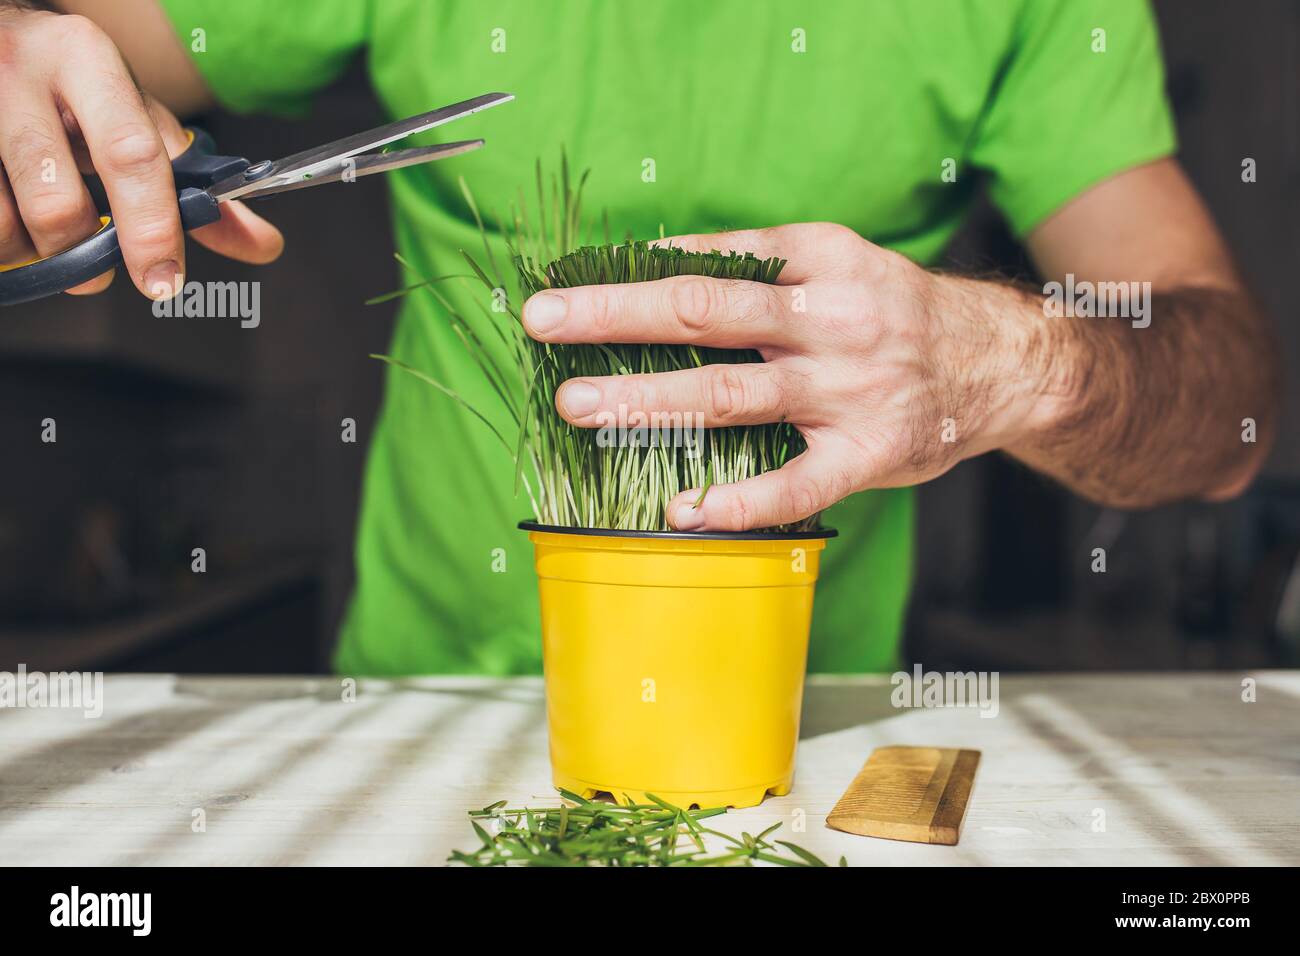 Gras schneiden als Frisur - Ökologie Konzept - Friseursalon Stockfoto